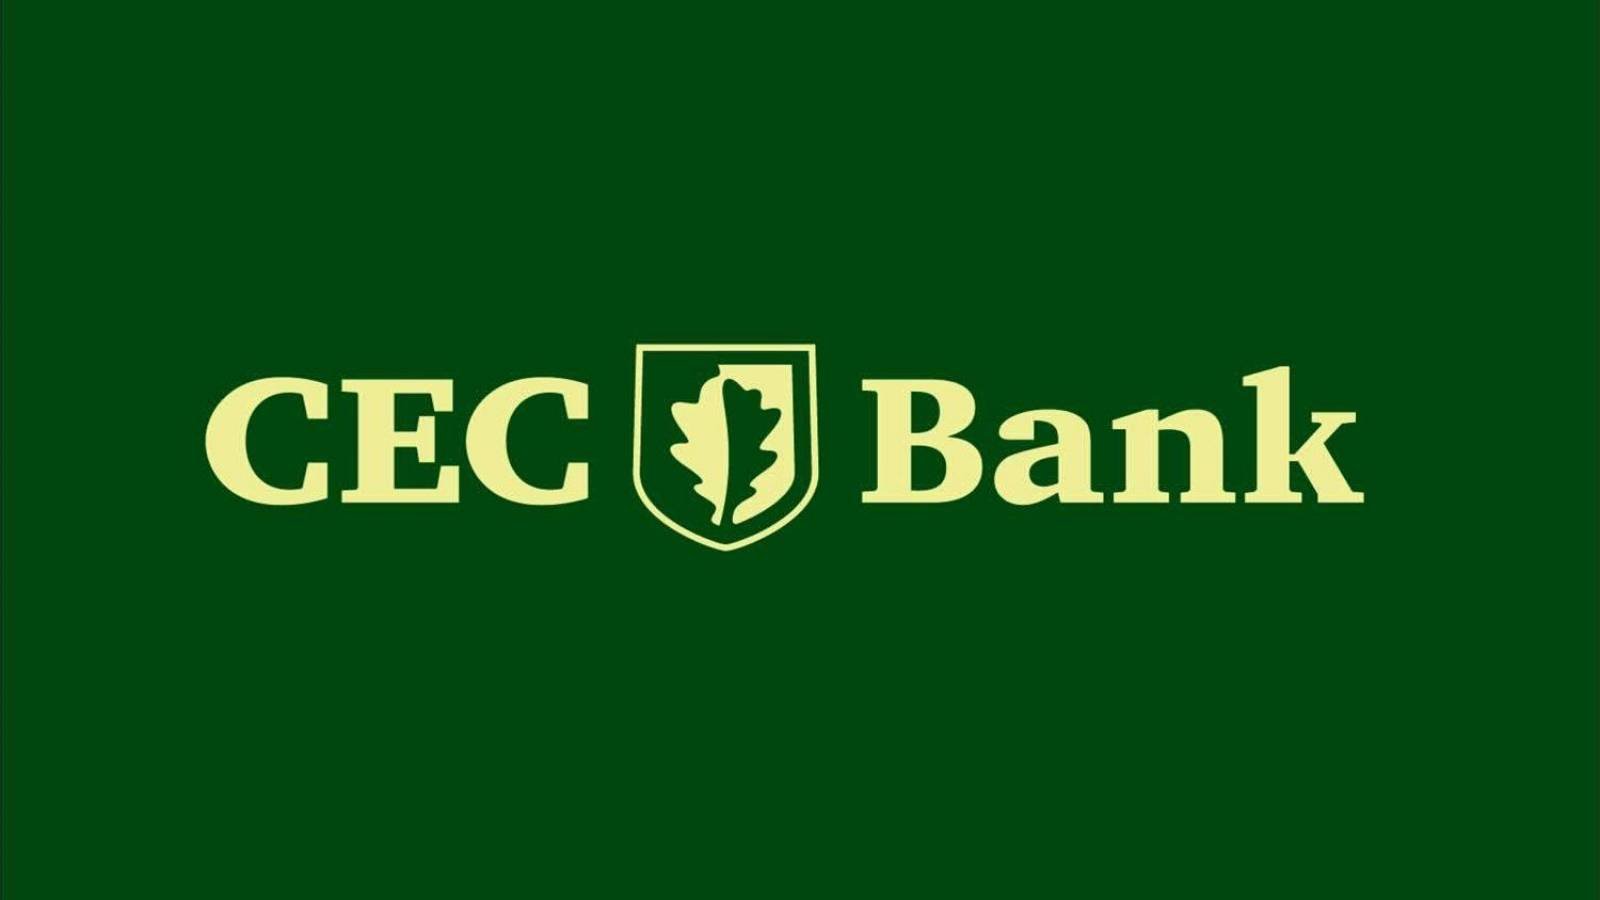 Velocidad del banco CEC